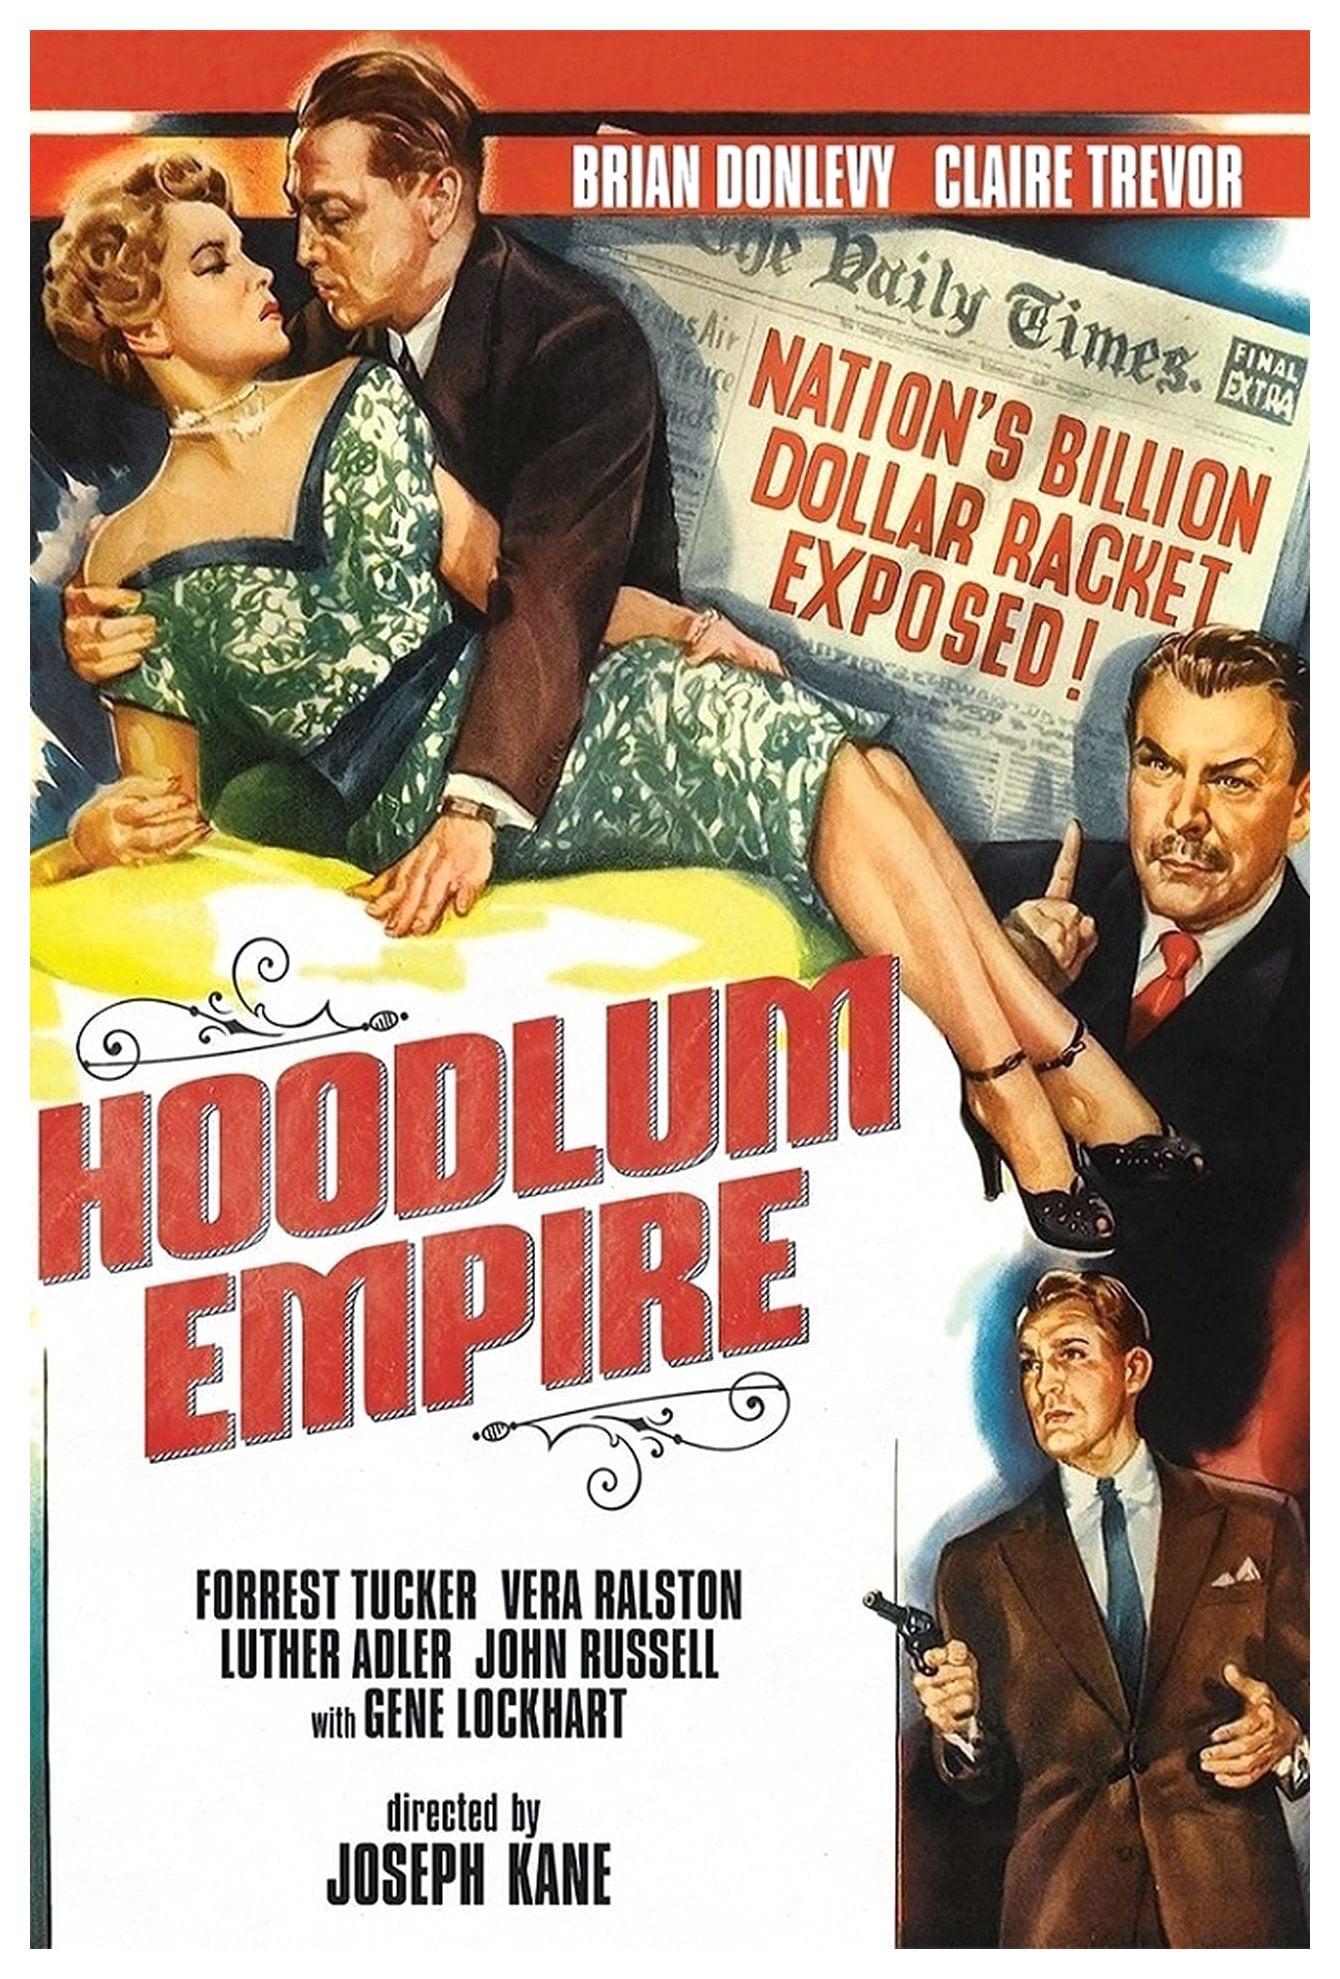 Hoodlum Empire poster